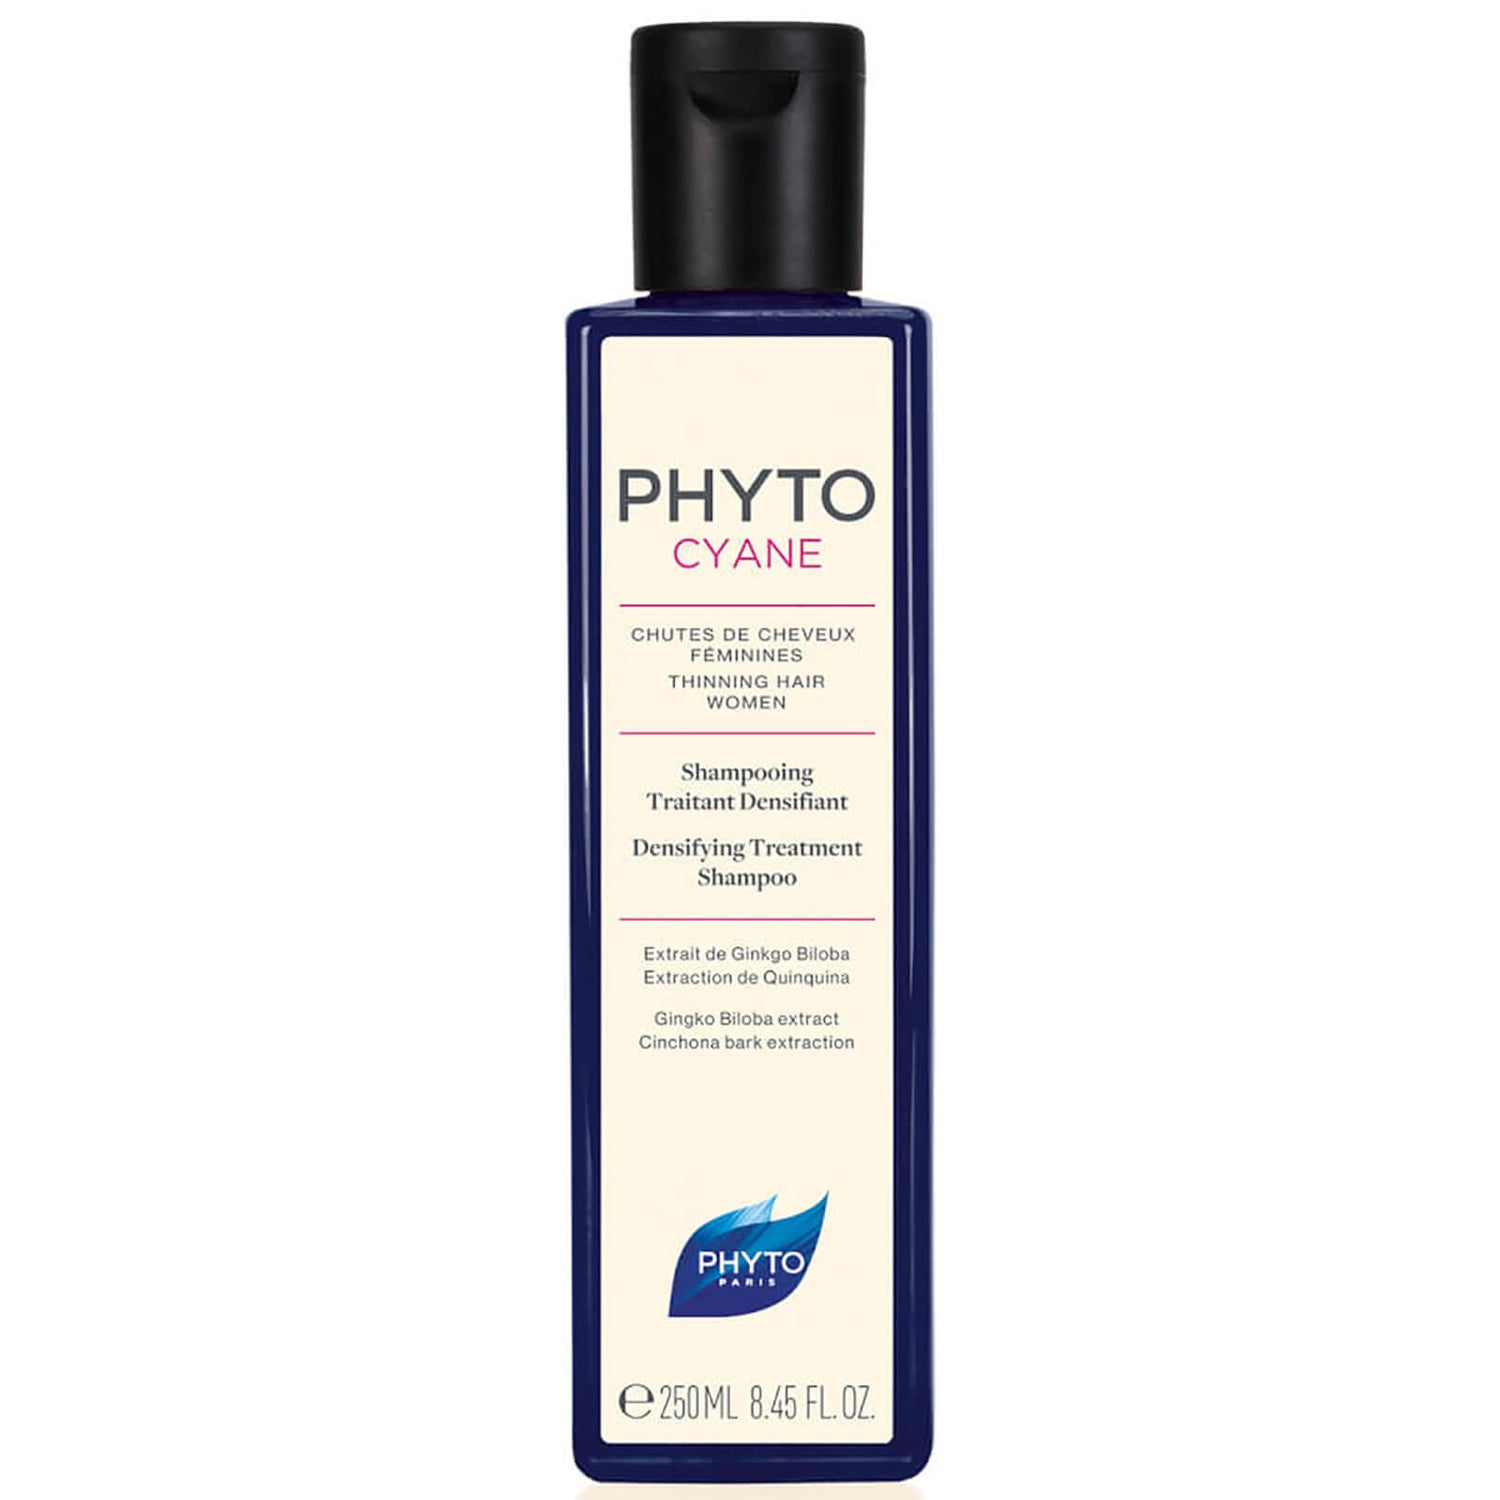 Phyto PHYTOCYANE Densifying Treatment Shampoo (8.45 fl. oz.)